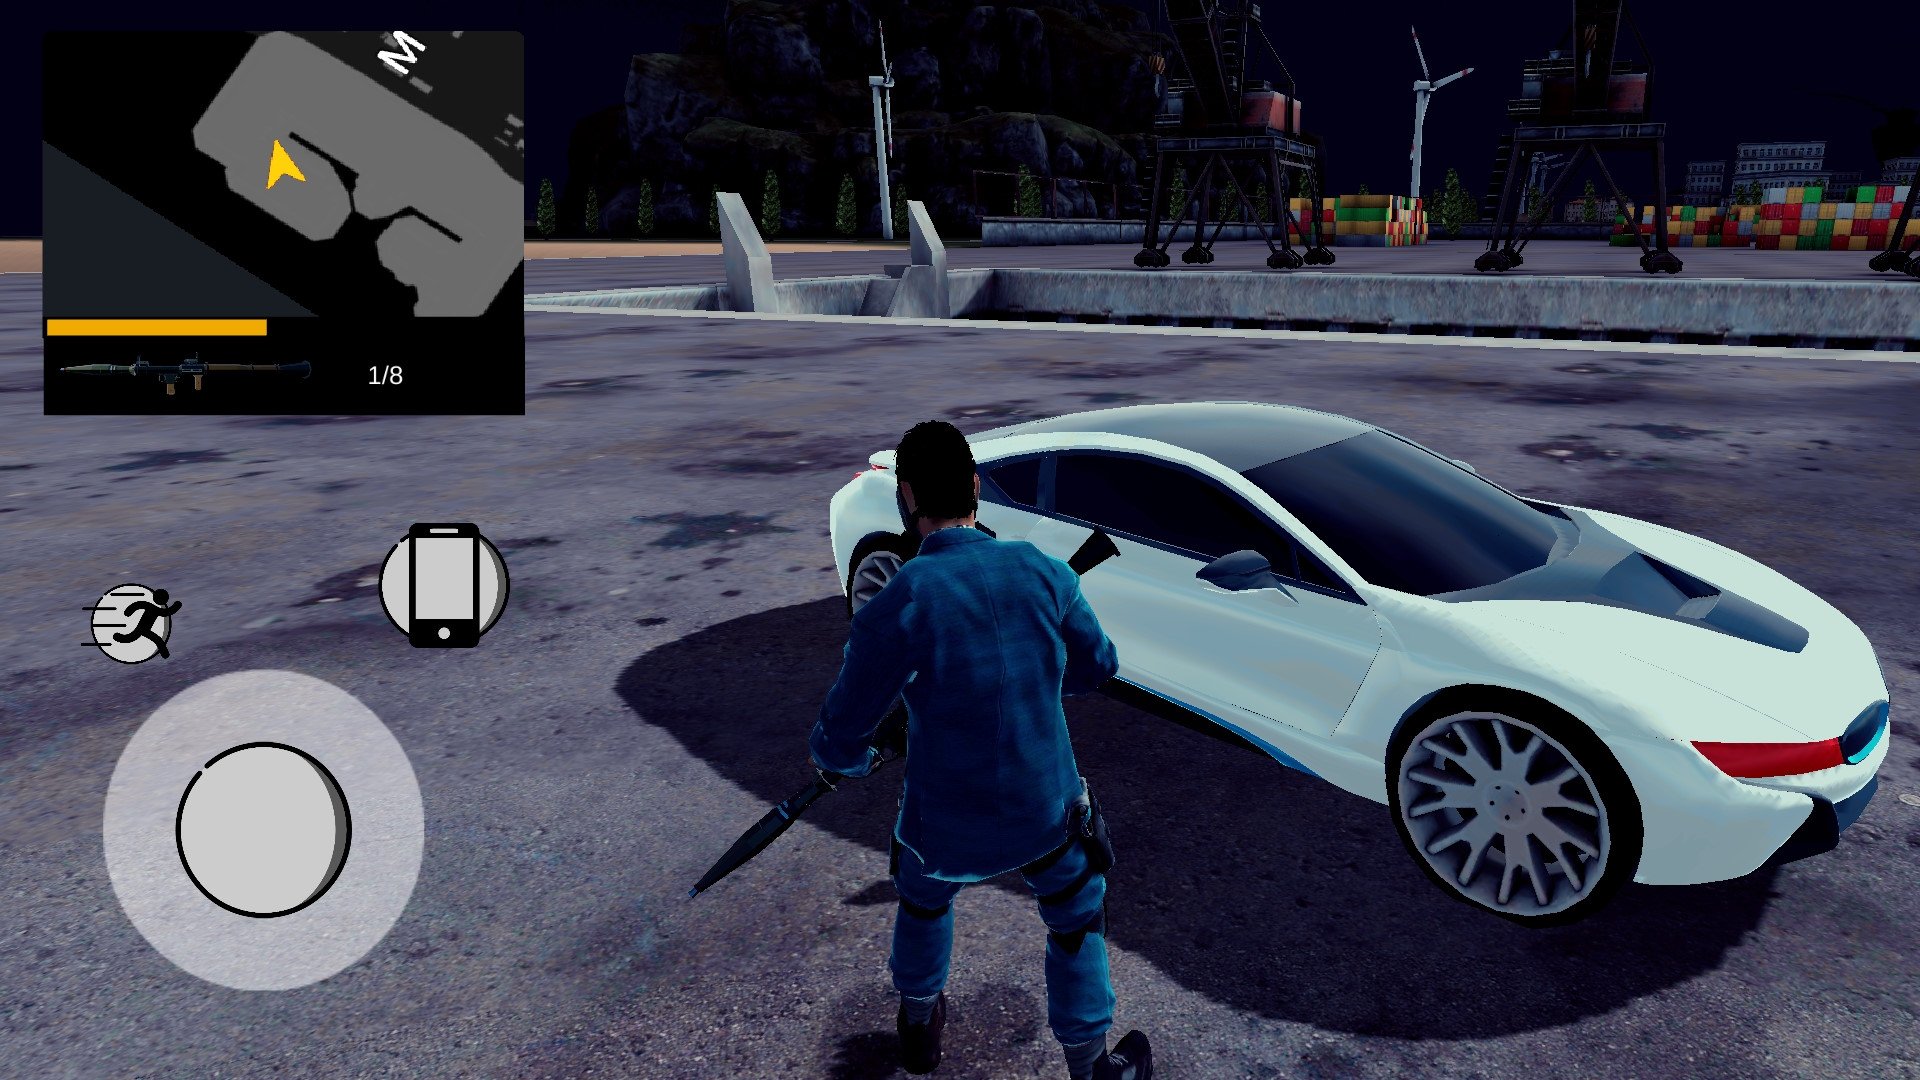 
          В Google Play можно бесплатно скачать бюджетную версию GTA с открытым миром и возможностью сесть в любую машину
        